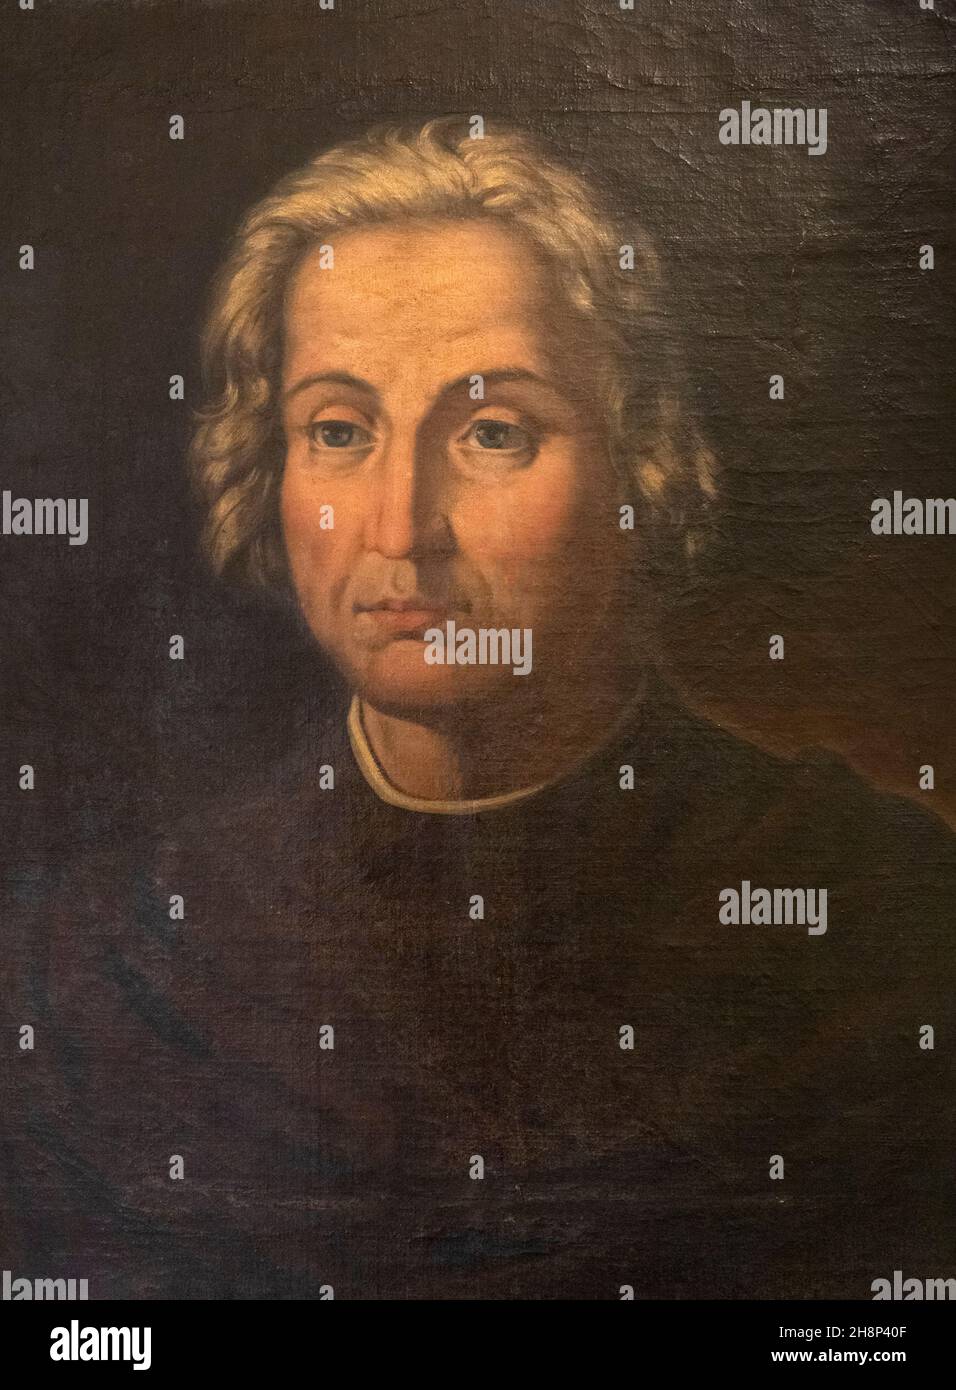 Retrato de Cristóbal Colón, 1451 - 1506. explorador italiano, navegador y primer descubridor europeo de las Américas. Después de un trabajo de J.D. Beque Foto de stock